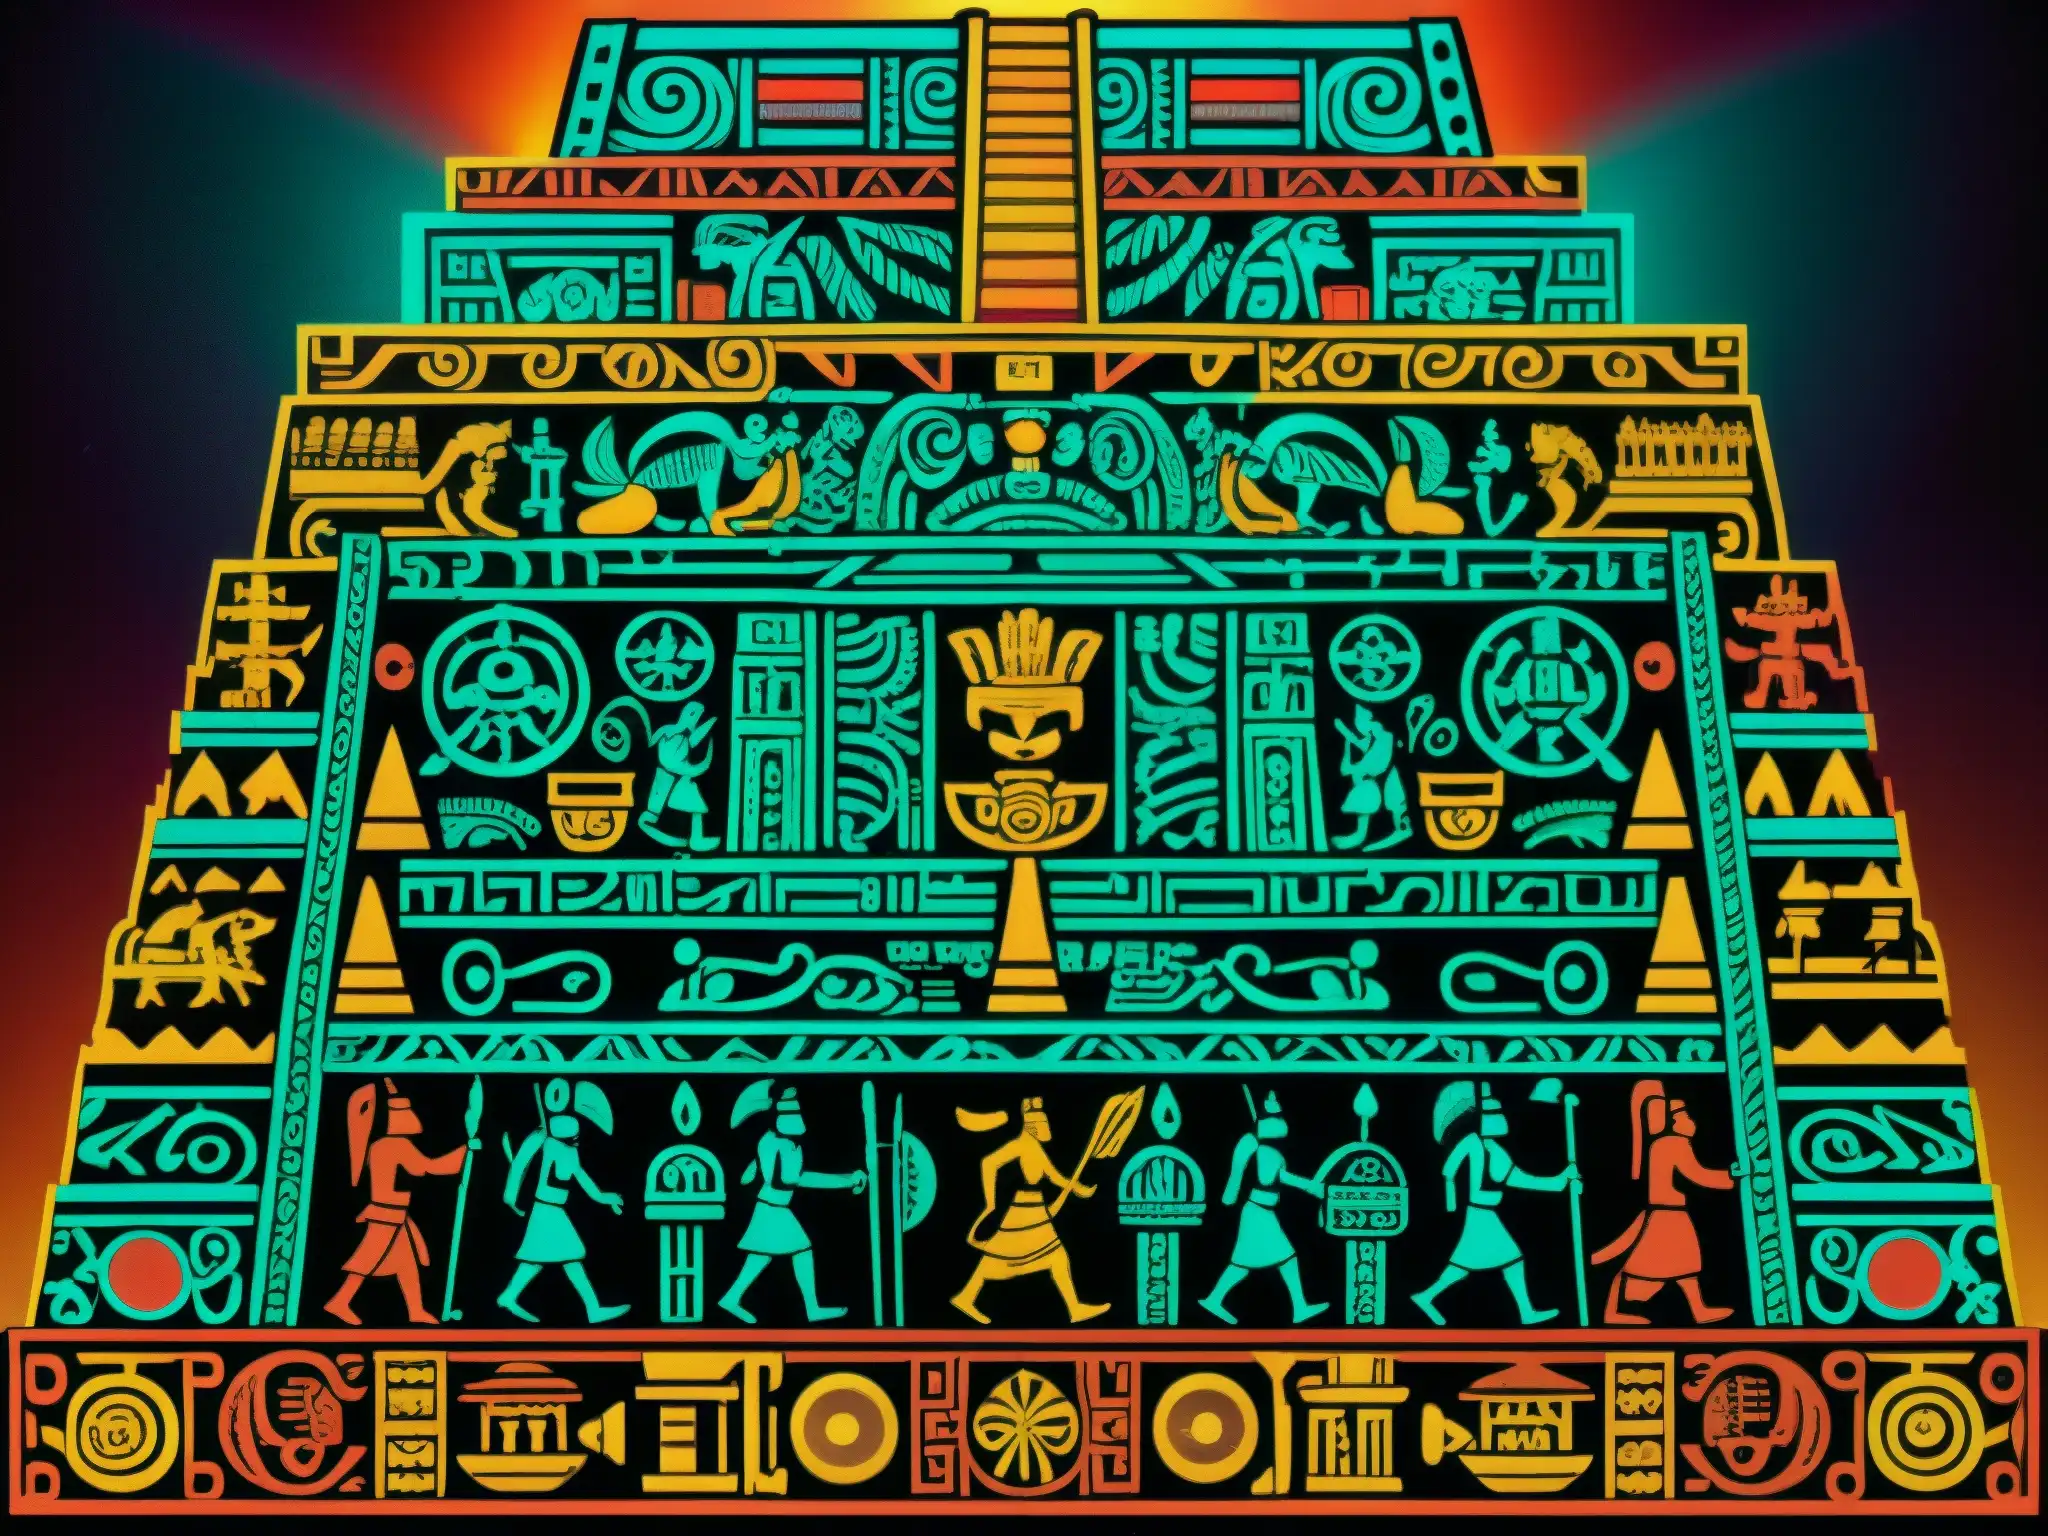 Detalle de la impresionante representación azteca del Mictlán, el inframundo en la mitología azteca, con intrincados grabados y colores vibrantes